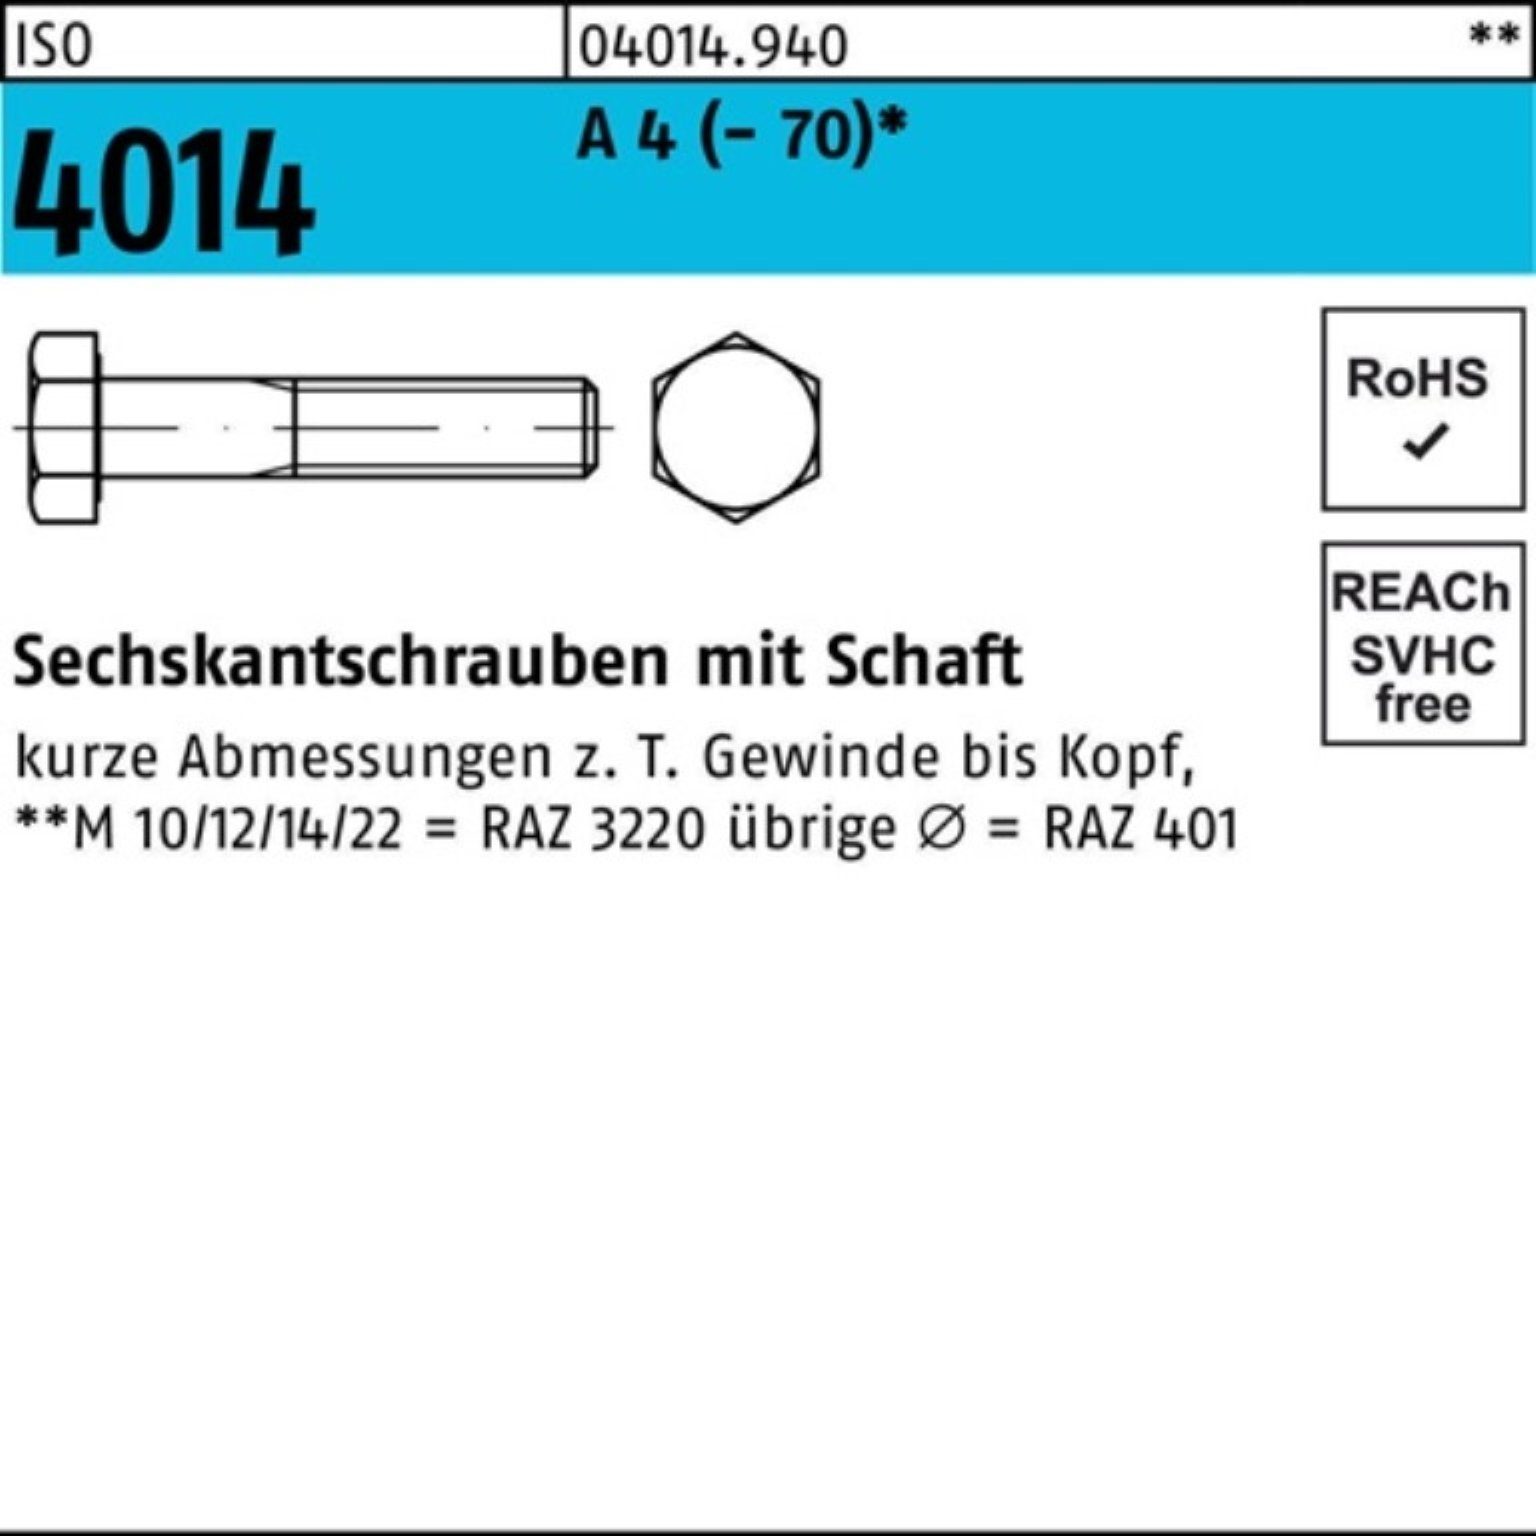 Bufab Sechskantschraube 100er Pack Sechskantschraube ISO 4014 Schaft M10x 160 A 4 (70) 1 St